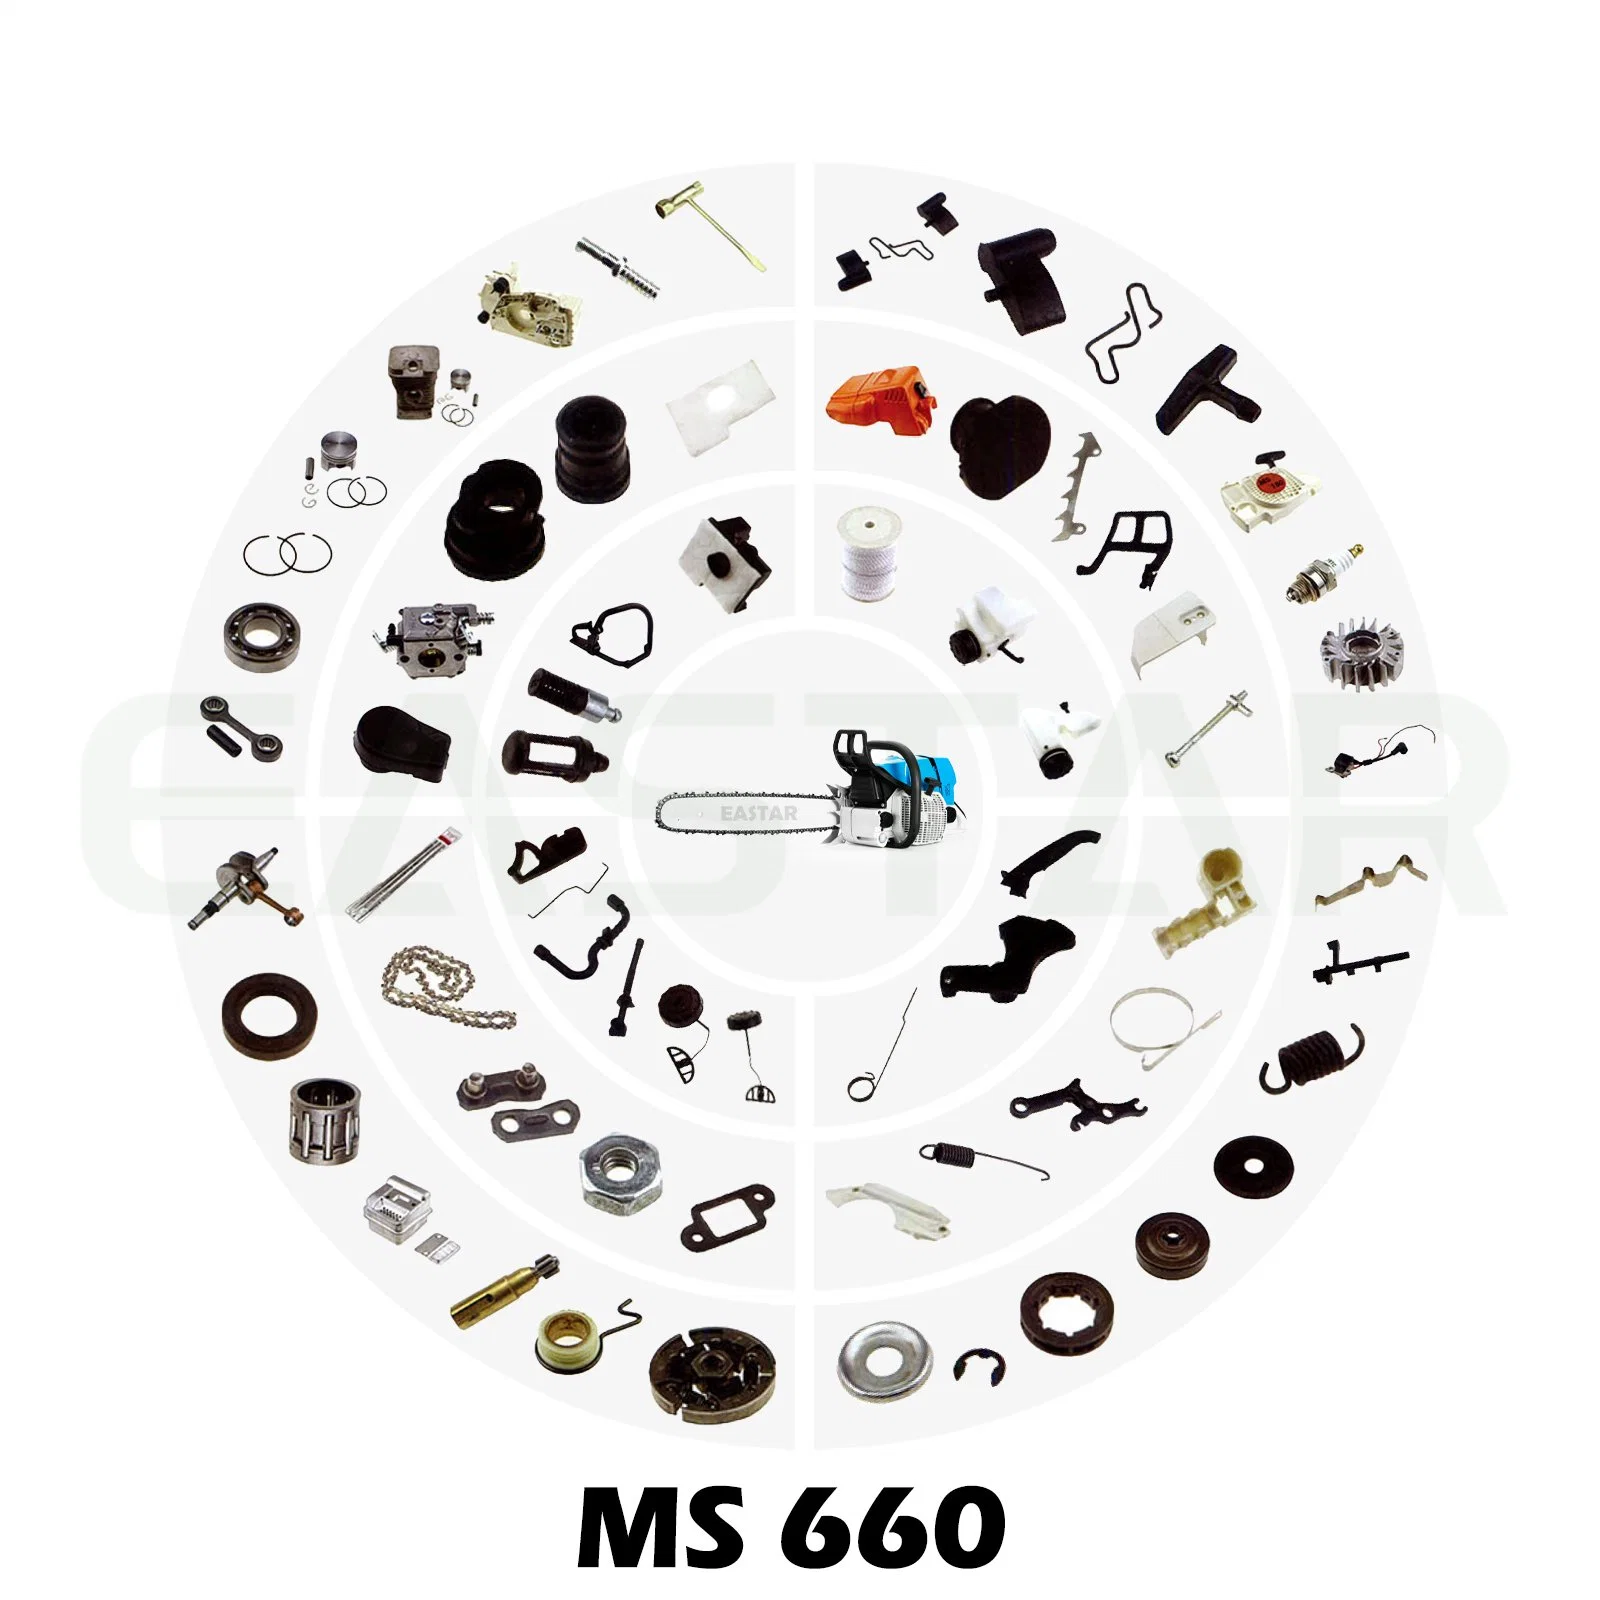 Ms 660 MS660 цепи пилы цепная пила детали для MS660 цепной пилы